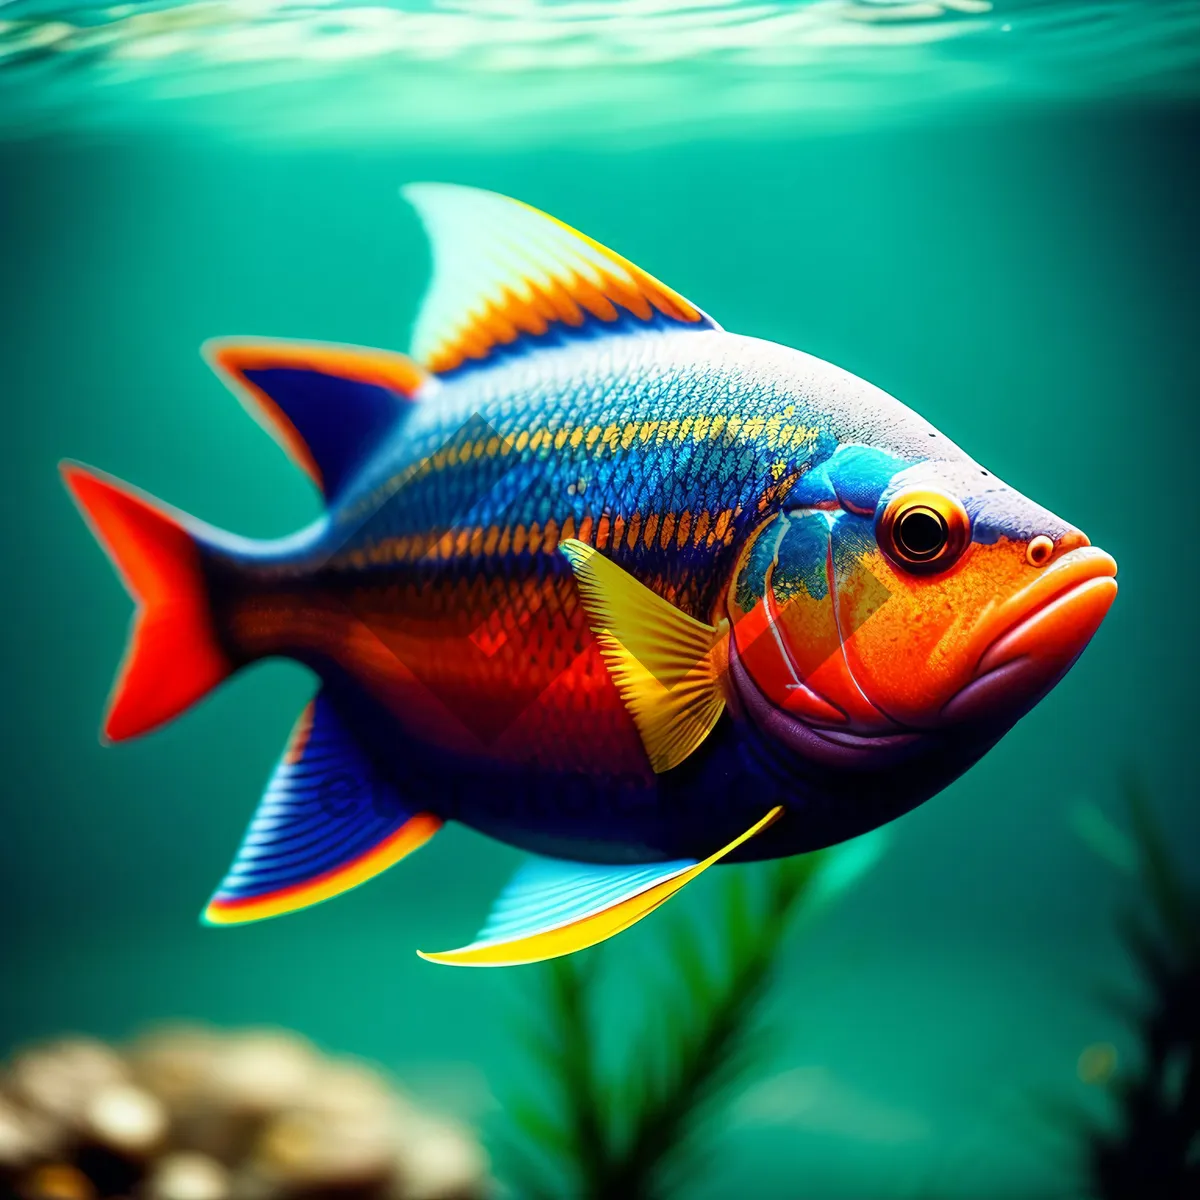 Picture of Golden Fish Swim in Aquarium Bowl